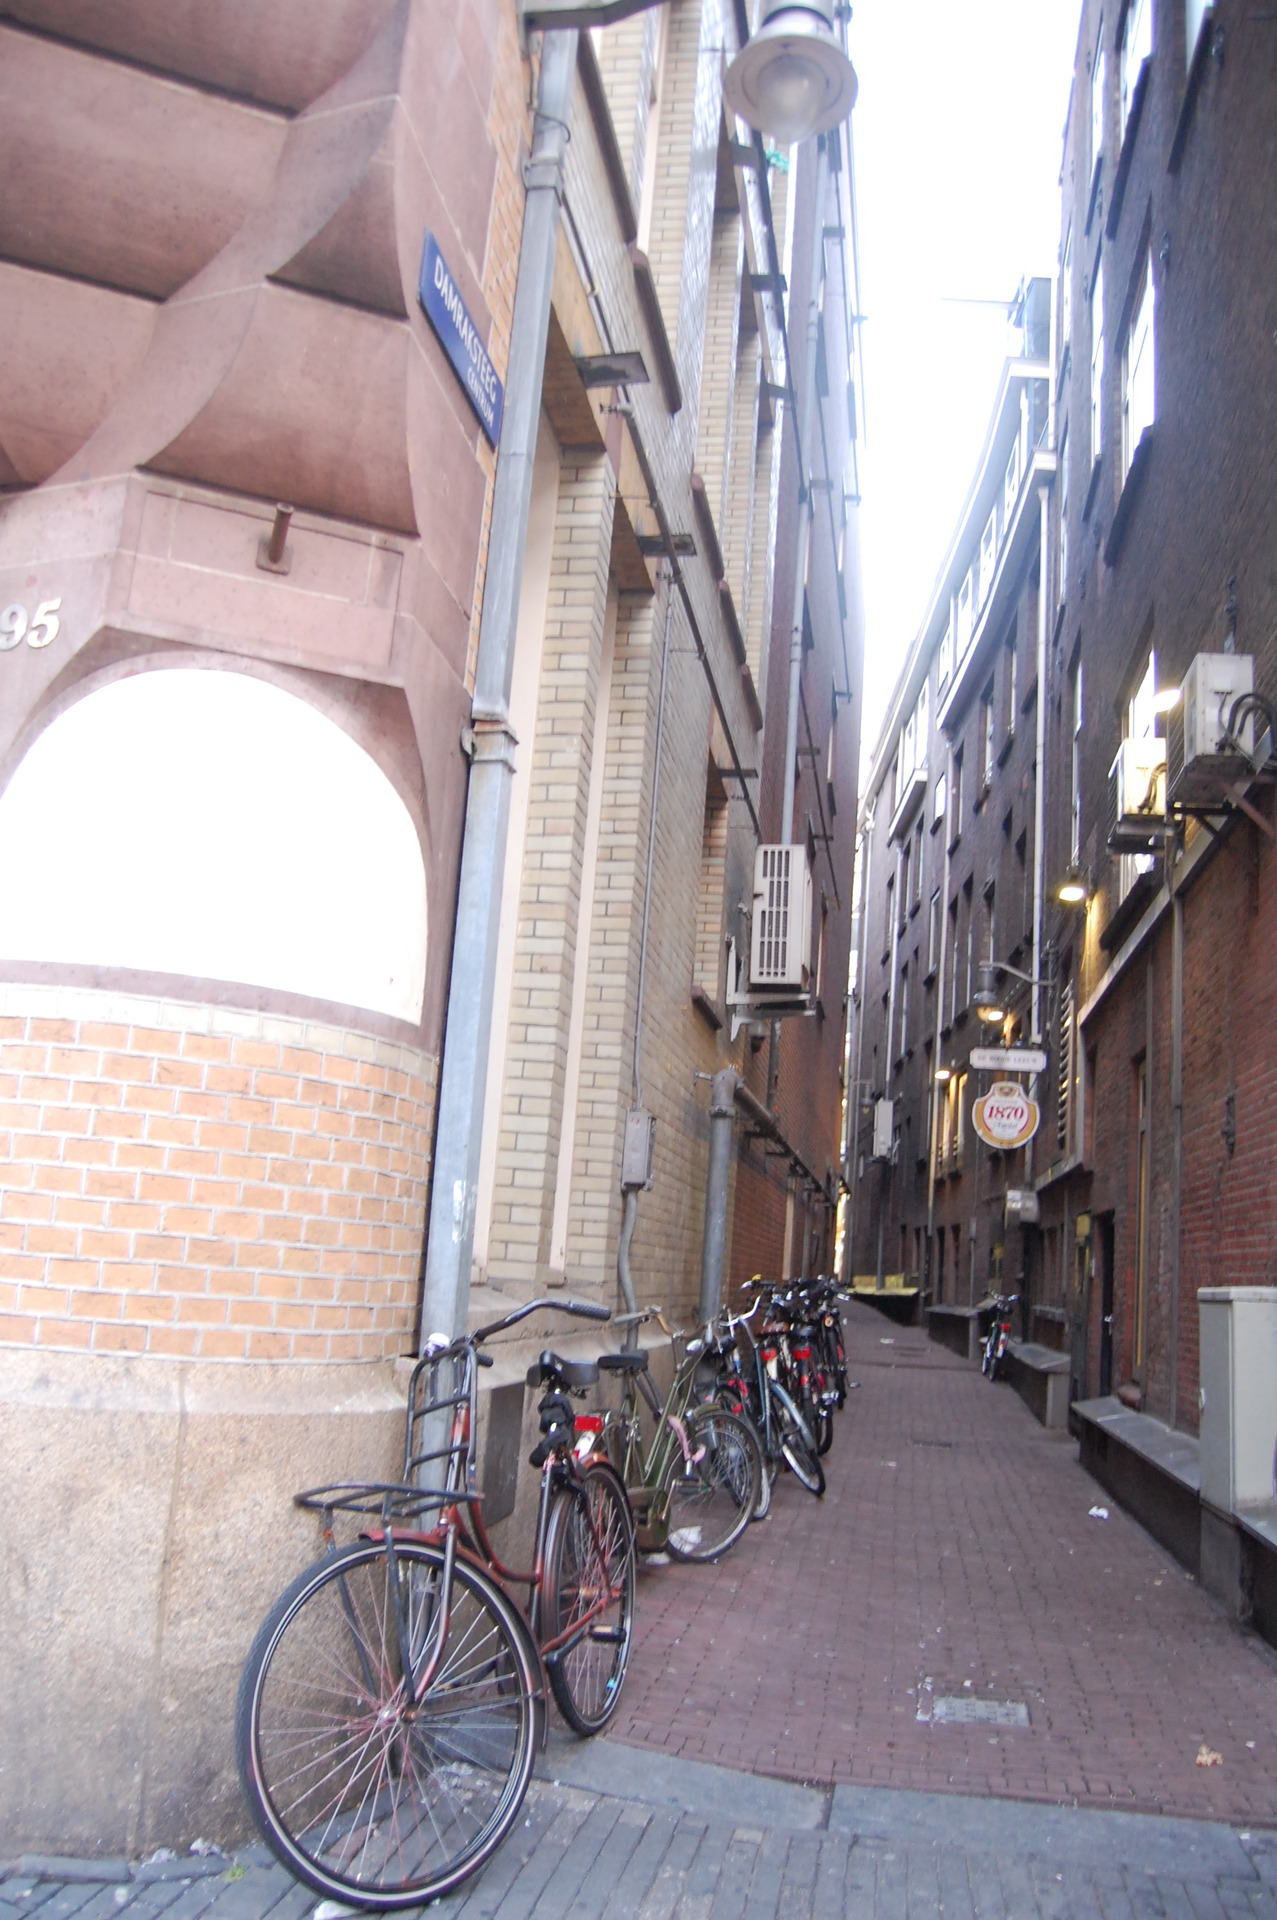 Uma ruela estreita nas ruas de Amsterdam.
Várias bicicletas parados por ali.. não é o lugar mais belo do mundo?